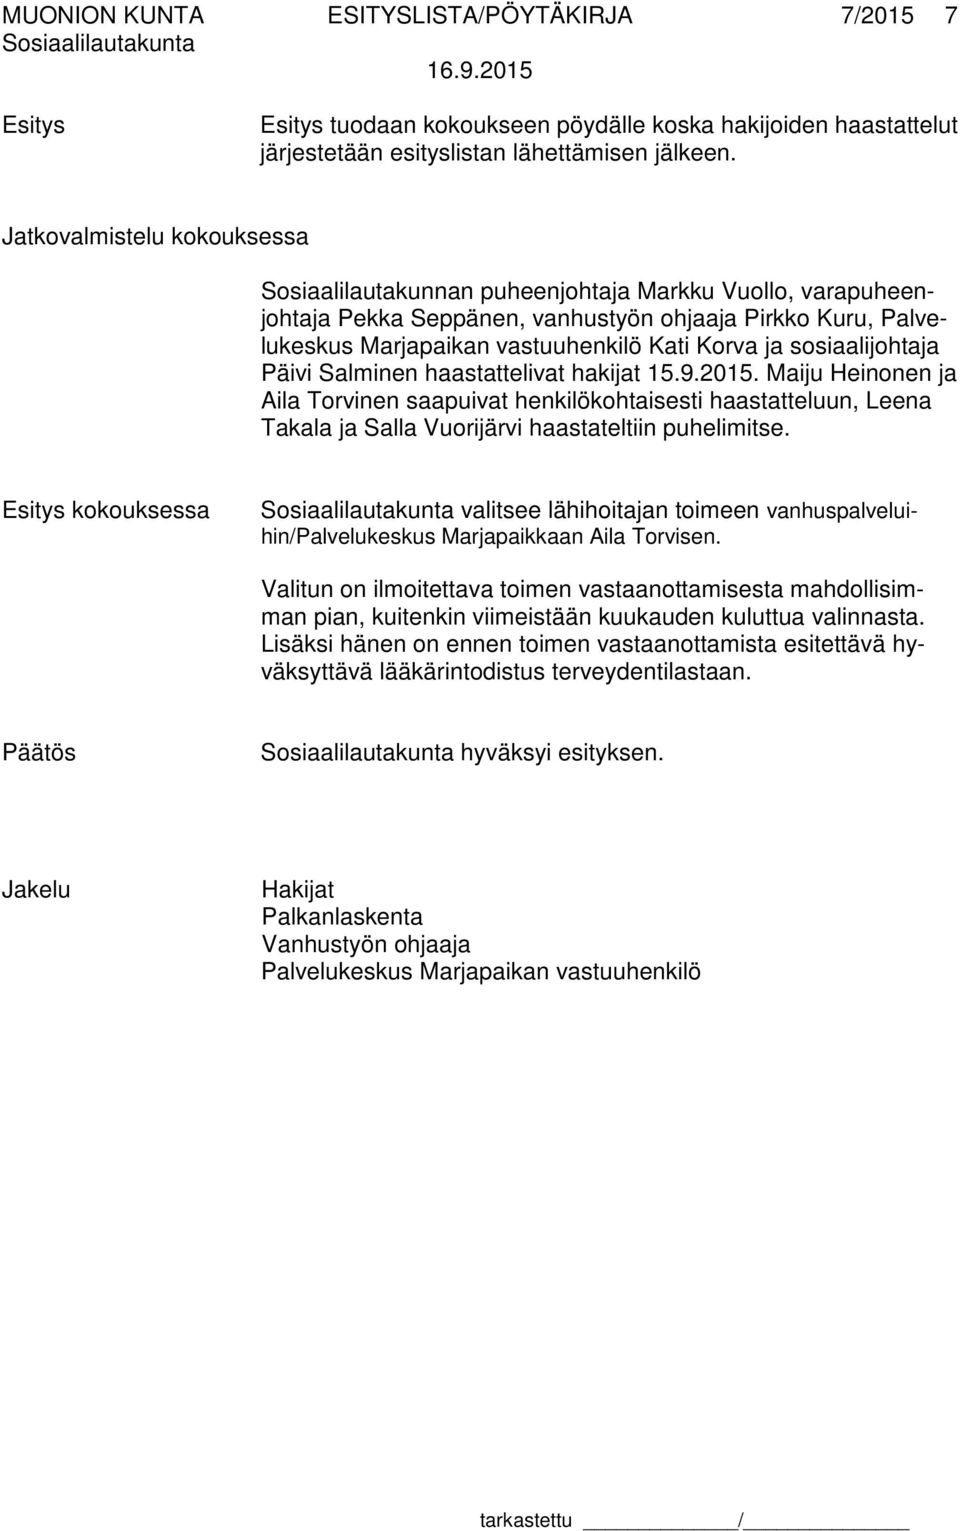 sosiaalijohtaja Päivi Salminen haastattelivat hakijat 15.9.2015. Maiju Heinonen ja Aila Torvinen saapuivat henkilökohtaisesti haastatteluun, Leena Takala ja Salla Vuorijärvi haastateltiin puhelimitse.